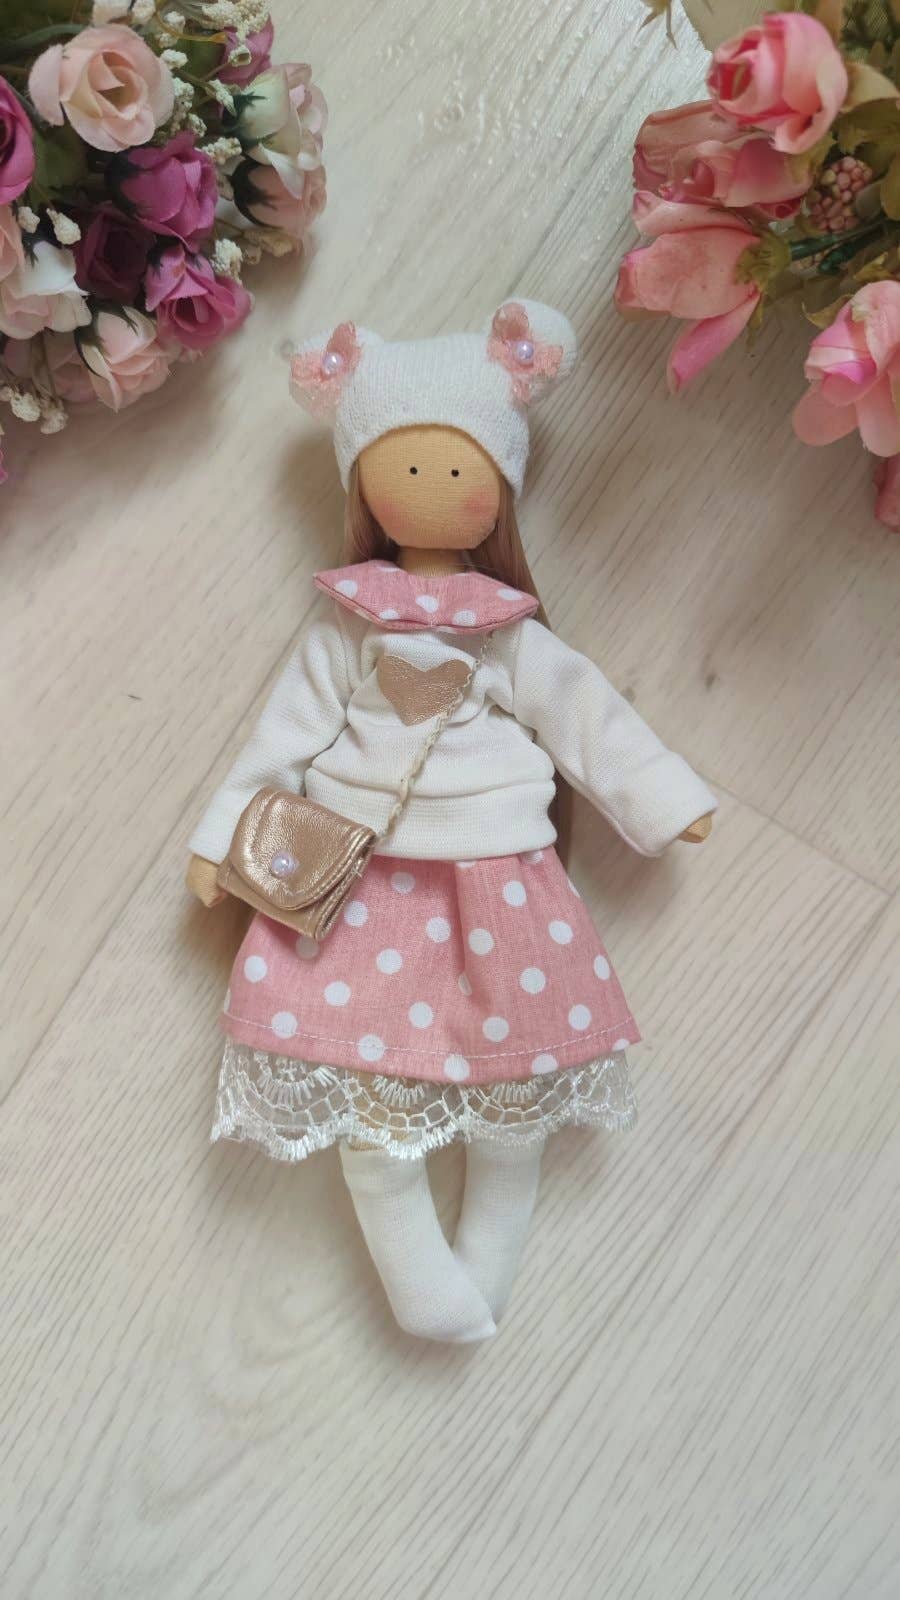 Handmade Doll, Fabric Doll, Cloth Dolls, Soft Doll